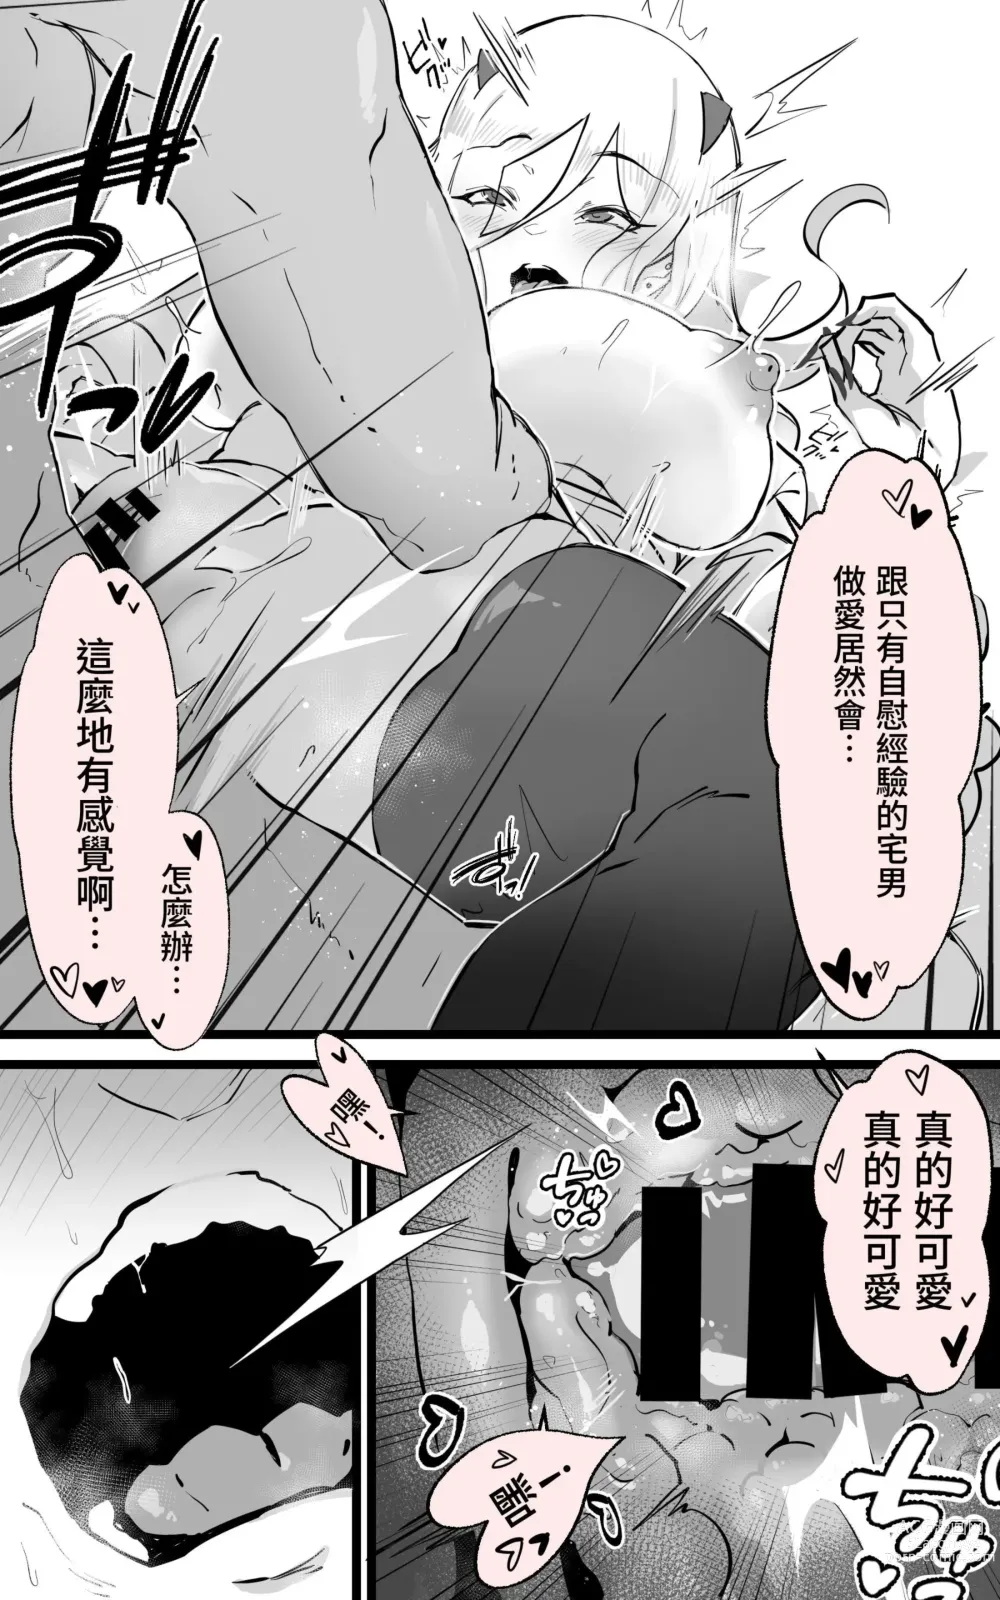 Page 20 of doujinshi 與在秋葉原遇到的辣妹同班同學變成砲友的故事-白·黑整合版